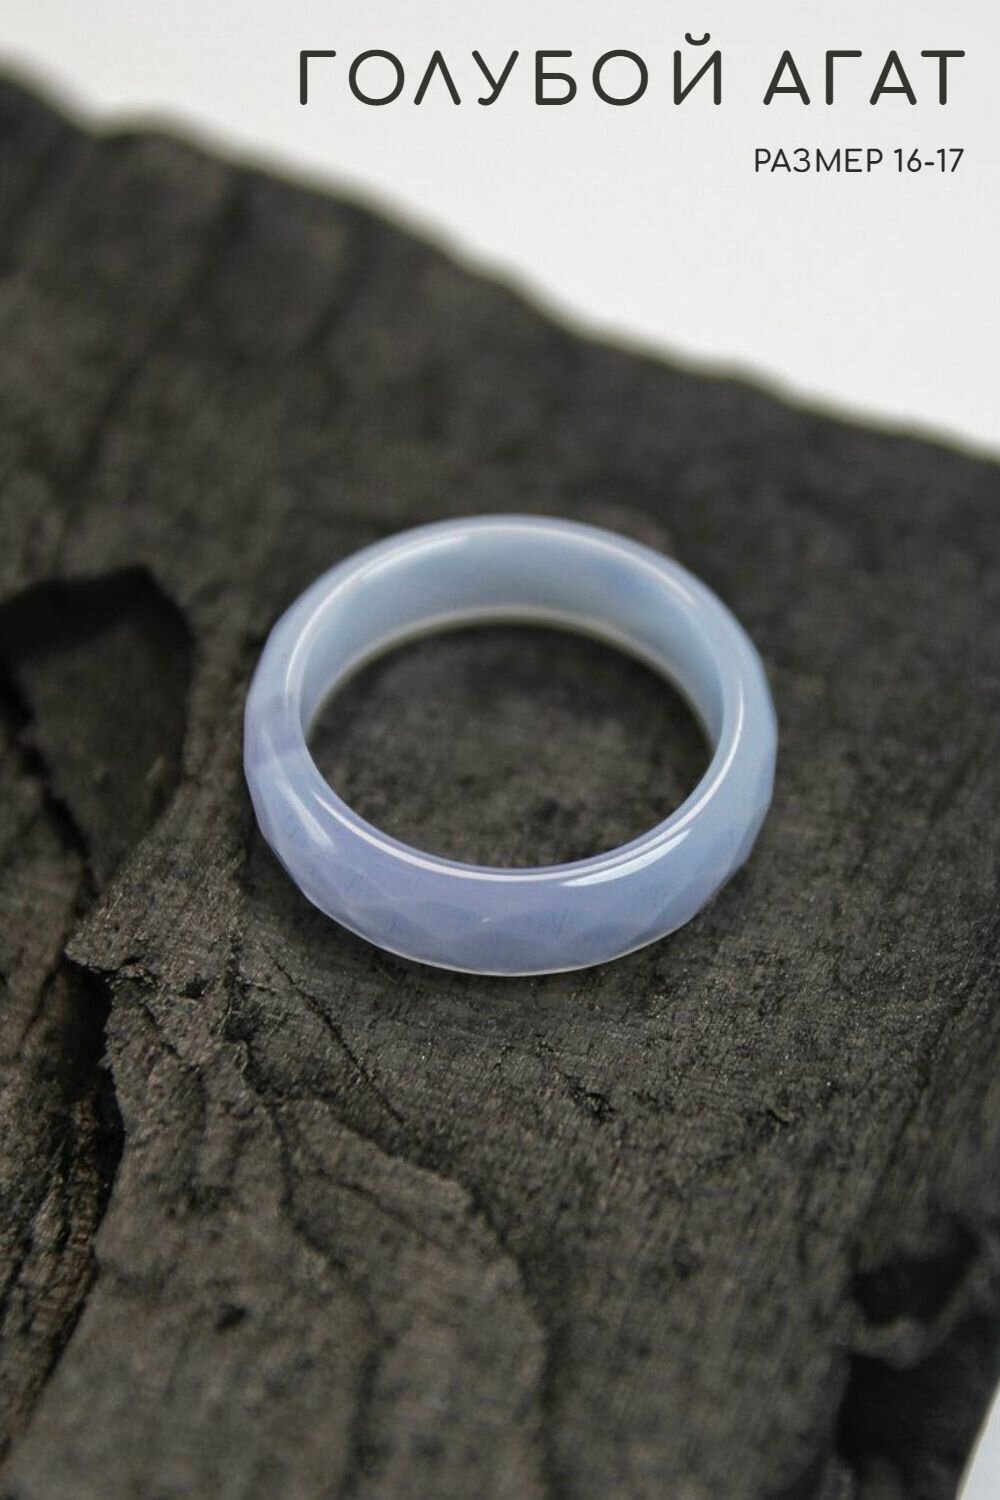 Кольцо Grow Up Кольцо Голубой агат, граненое - размер 16-17, натуральный камень - для душевного равновесия, агат